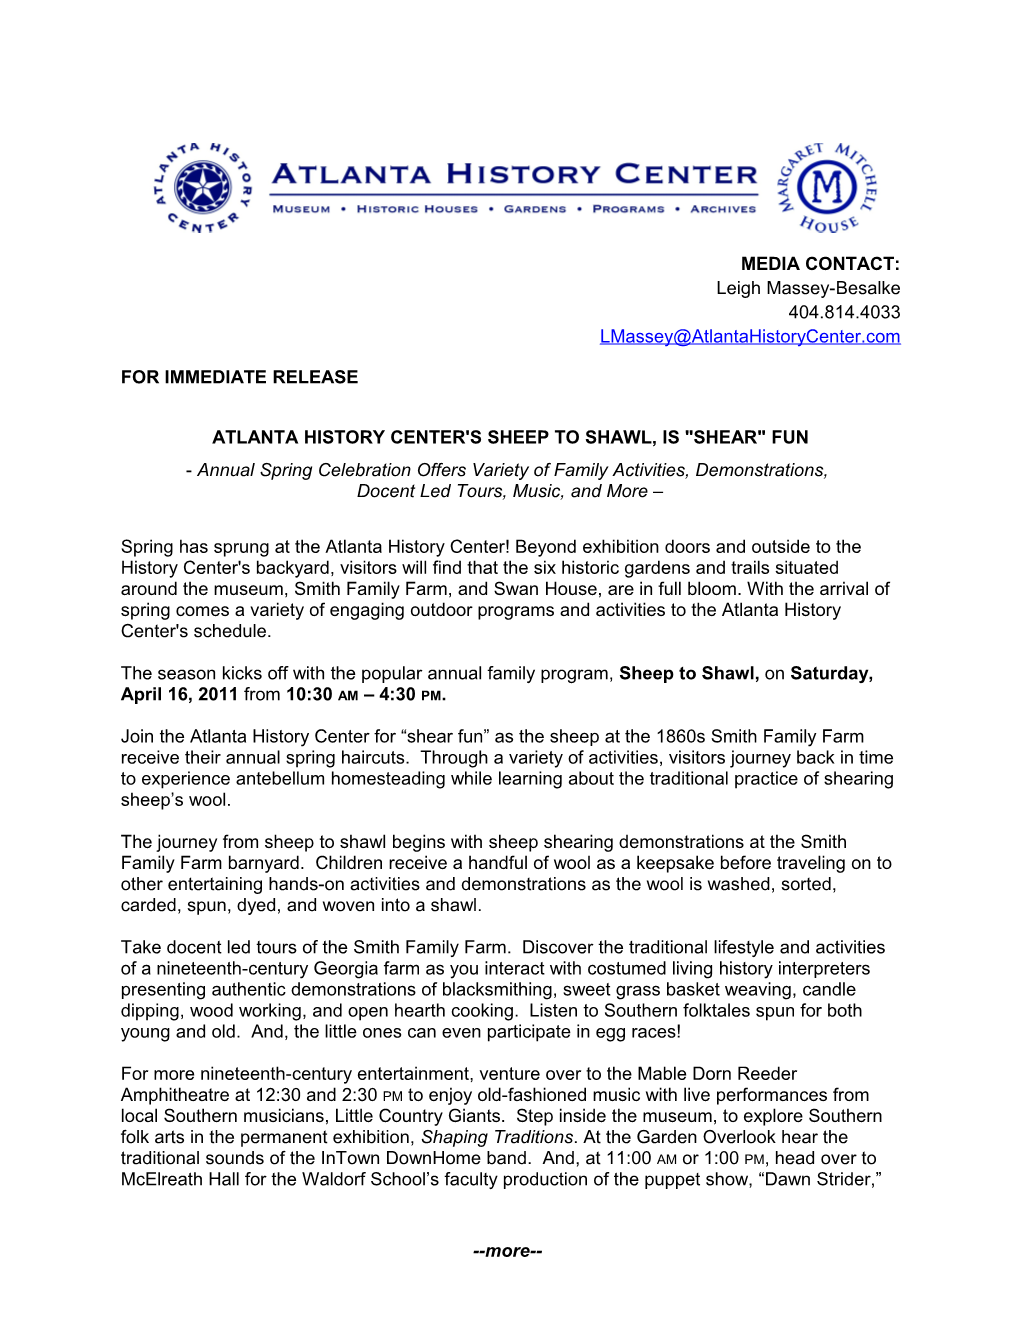 Atlanta History Center S Sheep to Shawl Page 2